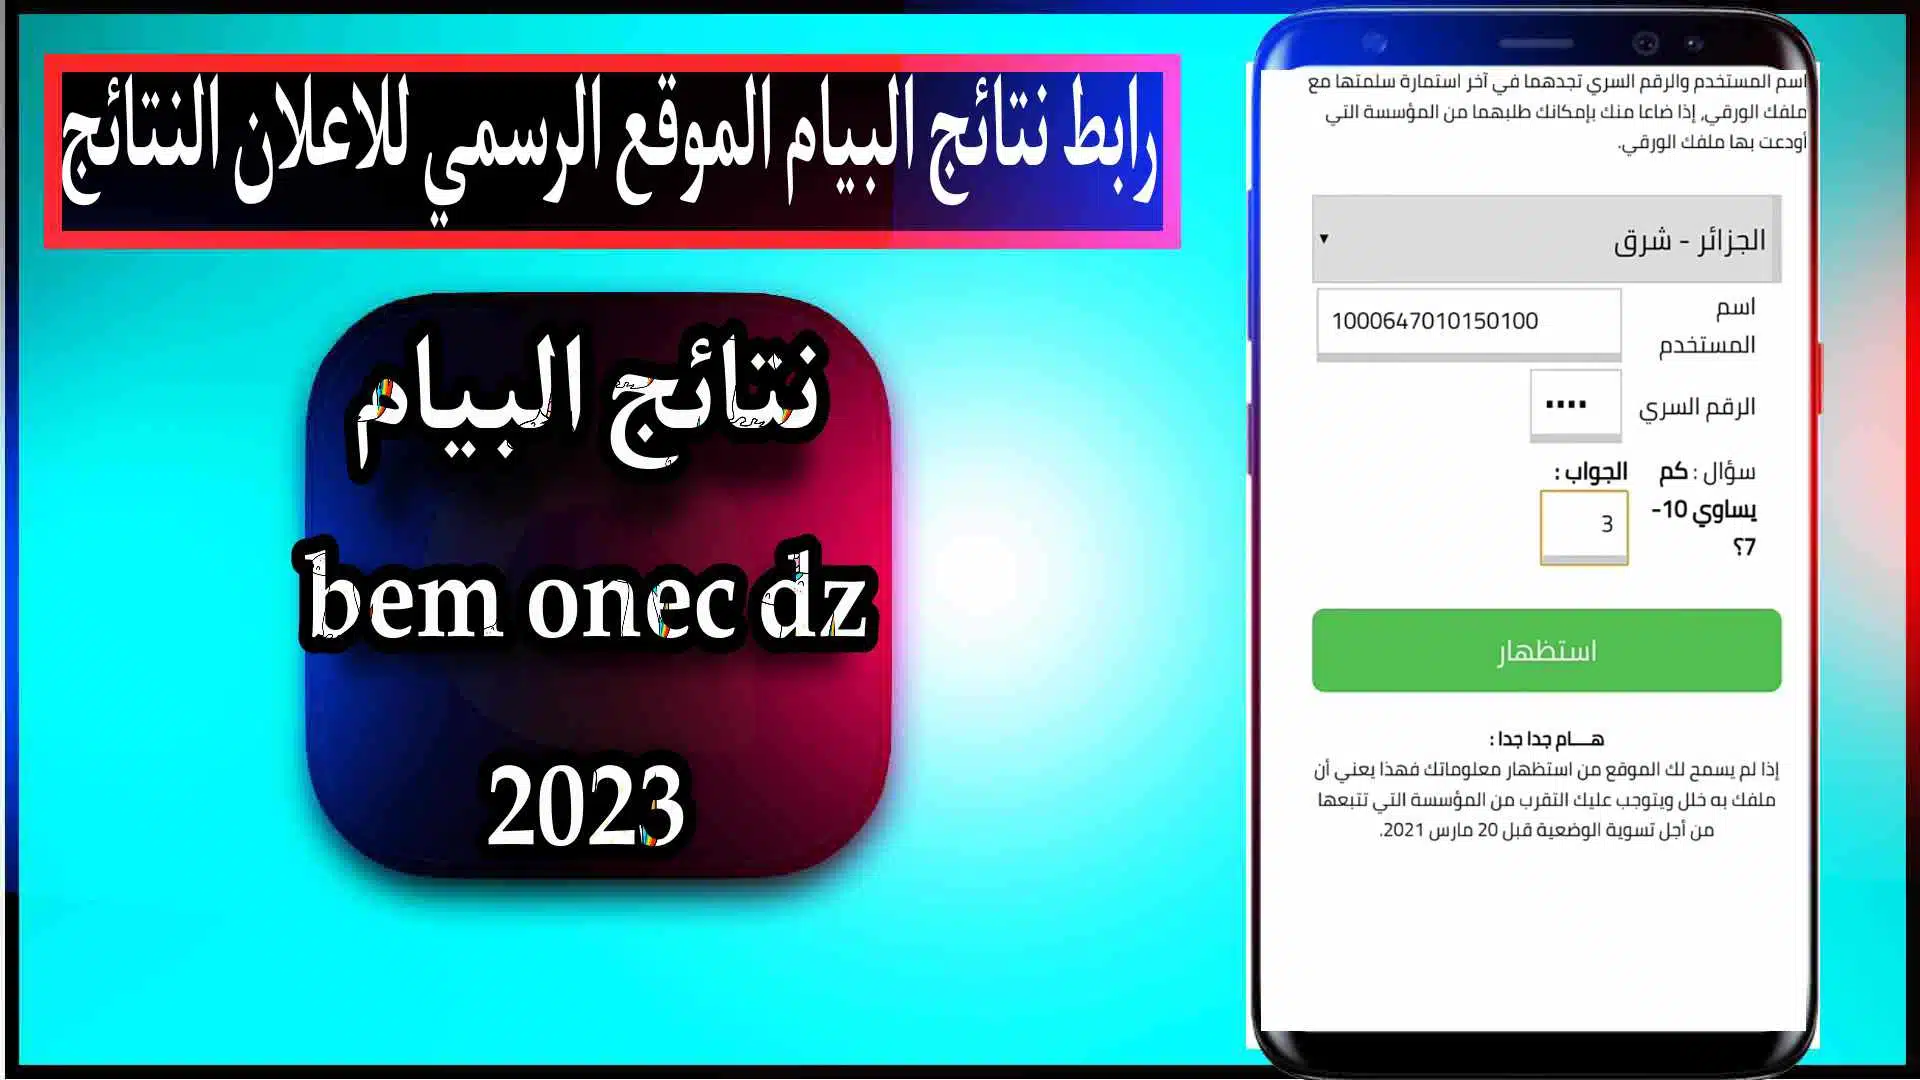 awliya education gov dz 2023 رابط نتائج البيام الموقع الرسمي للاعلان النتائج 1